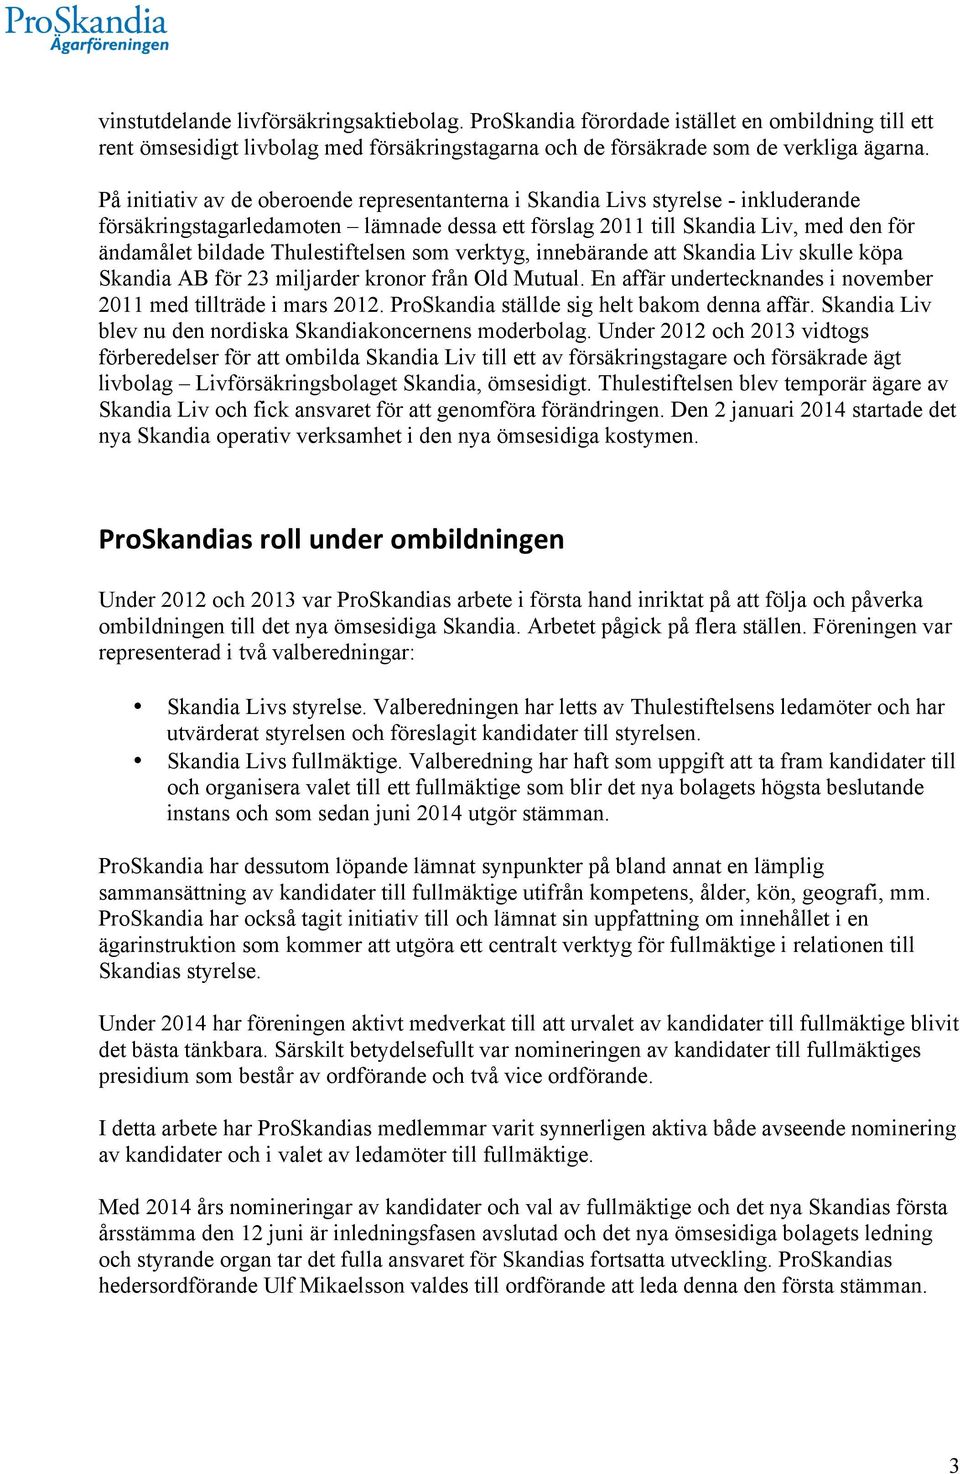 Thulestiftelsen som verktyg, innebärande att Skandia Liv skulle köpa Skandia AB för 23 miljarder kronor från Old Mutual. En affär undertecknandes i november 2011 med tillträde i mars 2012.